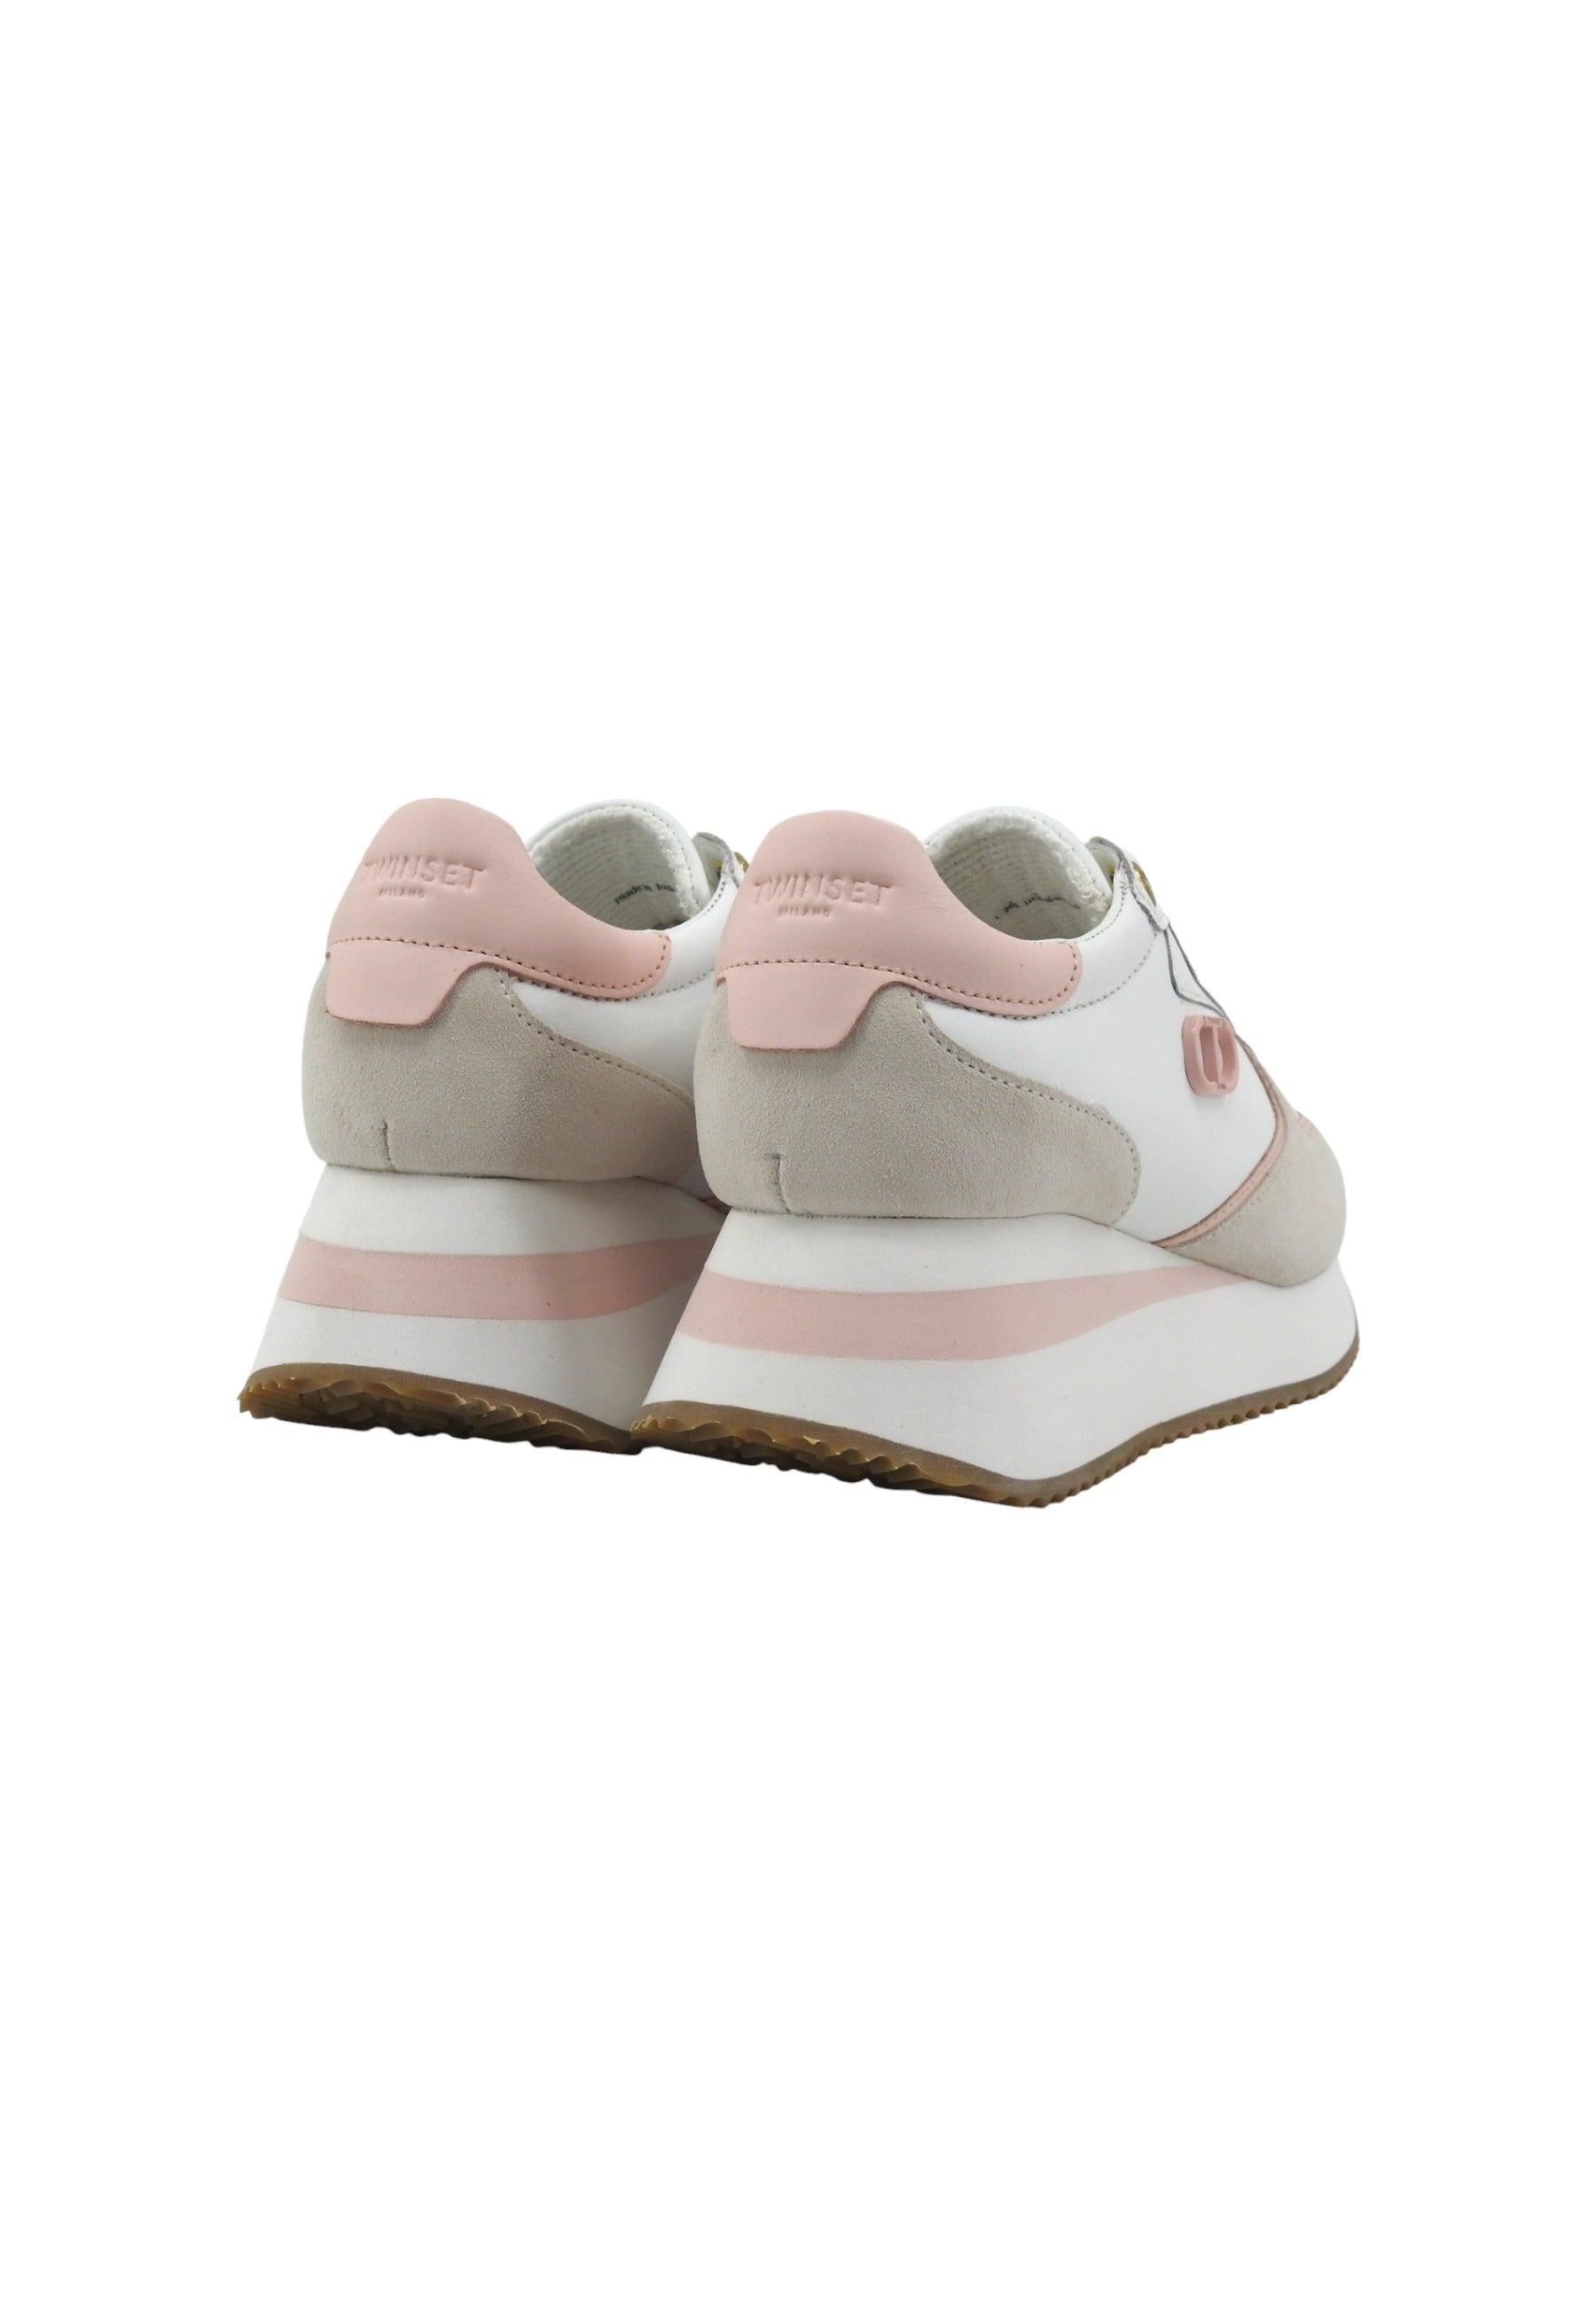 TWINSET Sneaker Donna Platform Bianco Ottico Cupcake Pink 241TC080 - Sandrini Calzature e Abbigliamento